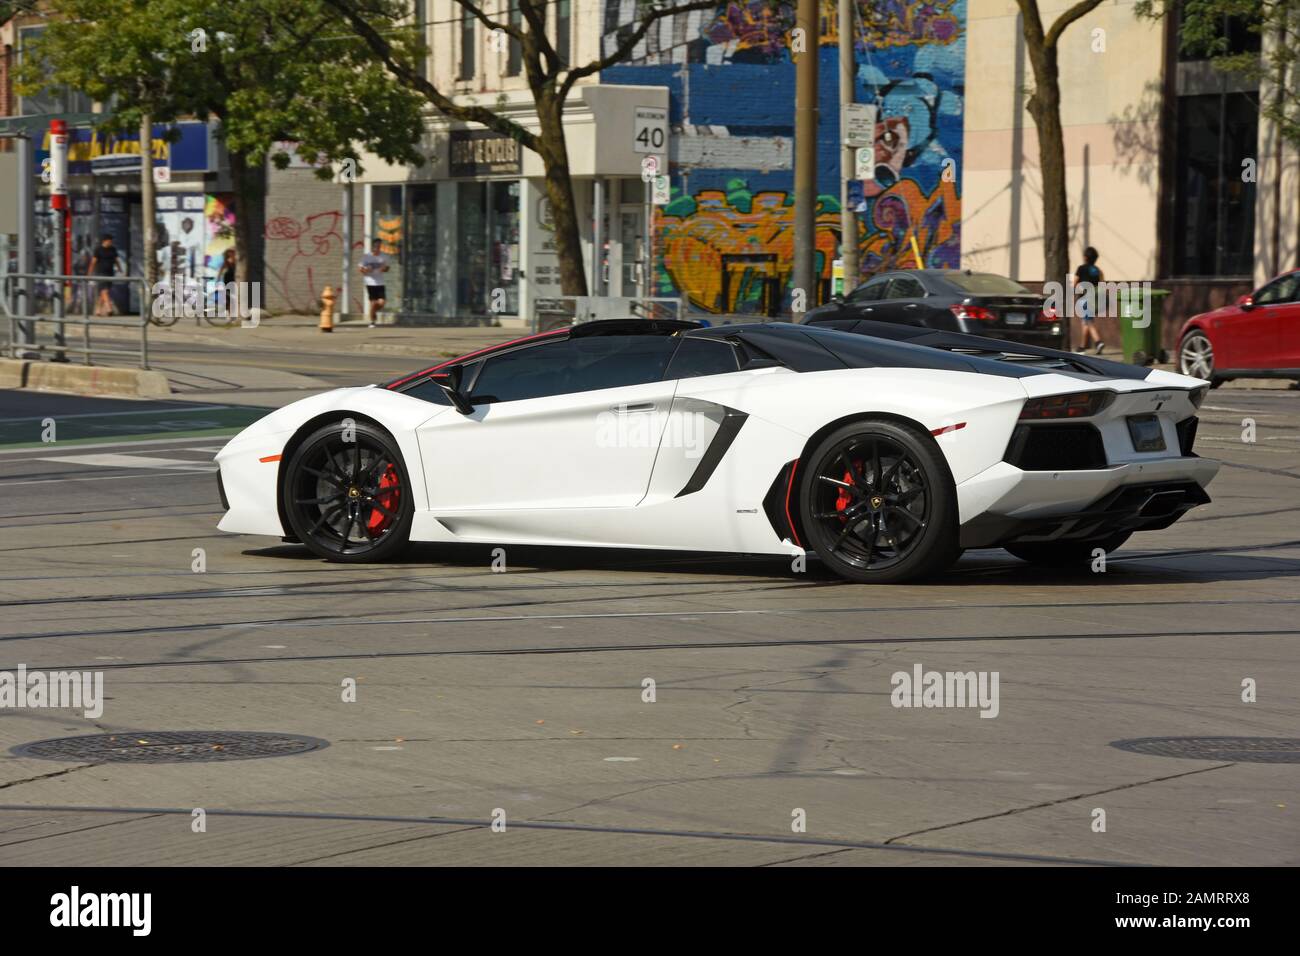 Lamborghini Supercar in the streets, North America Stock Photo